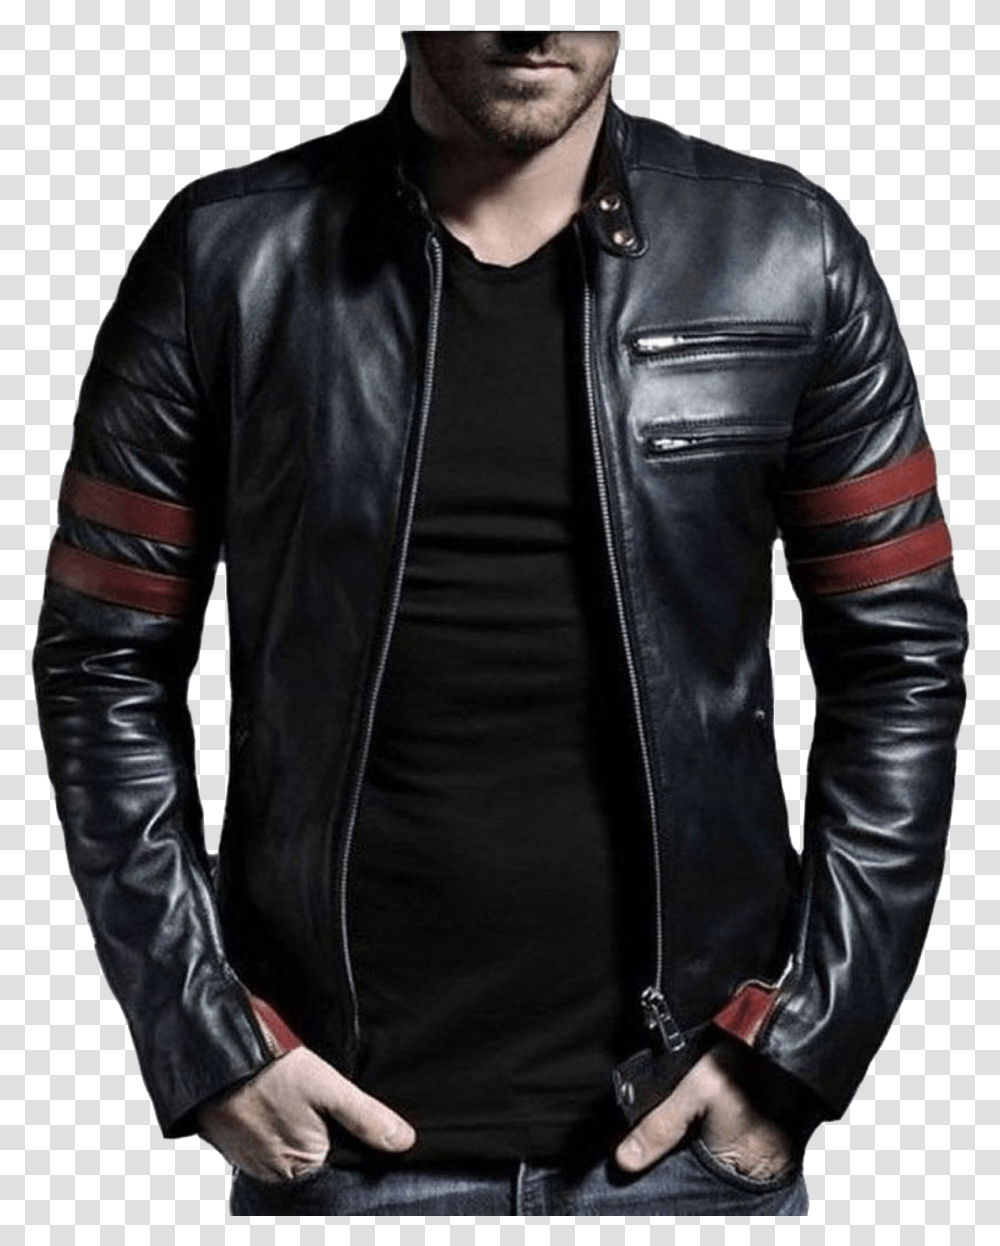 Leather Jacket For Men Image Download Leather Jacket, Apparel, Coat Transparent Png